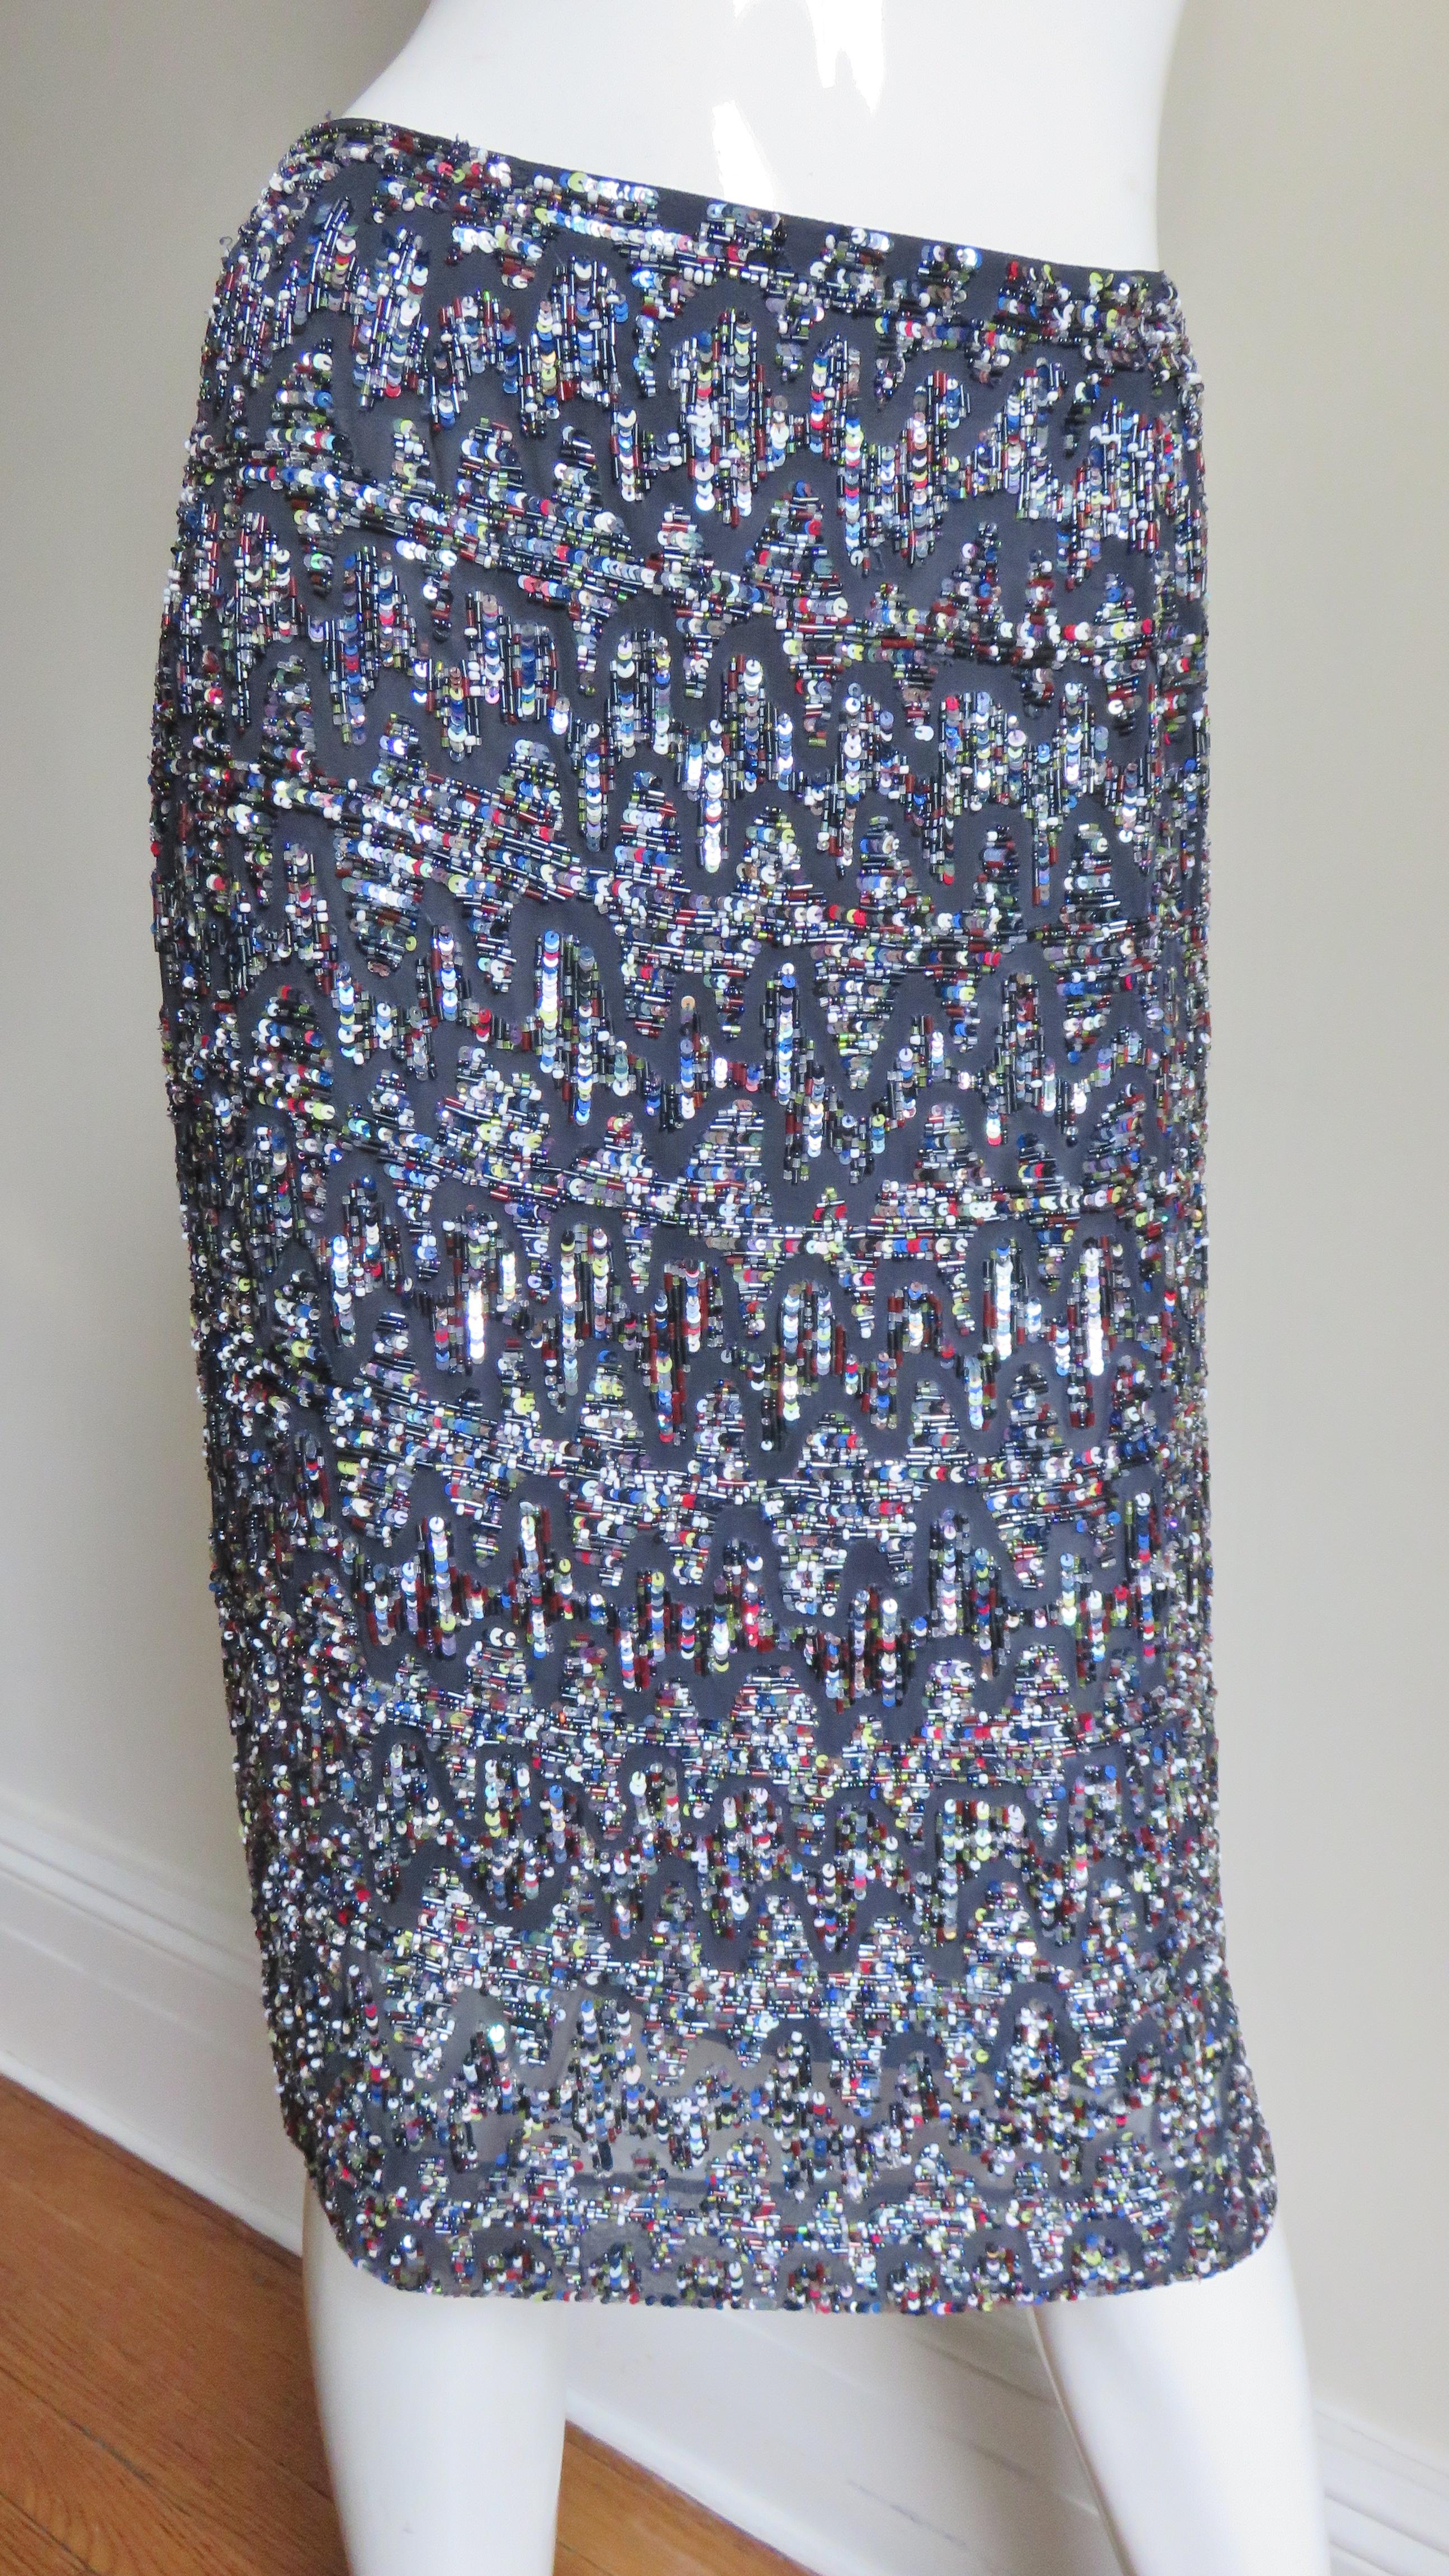 Une superbe jupe crayon en soie anthracite de Rena Lange recouverte d'un motif élaboré de paillettes blanches, argentées, grises et rouges, de perles de rocaille et de perles tubulaires en verre.  Il est doublé dans la même soie anthracite et